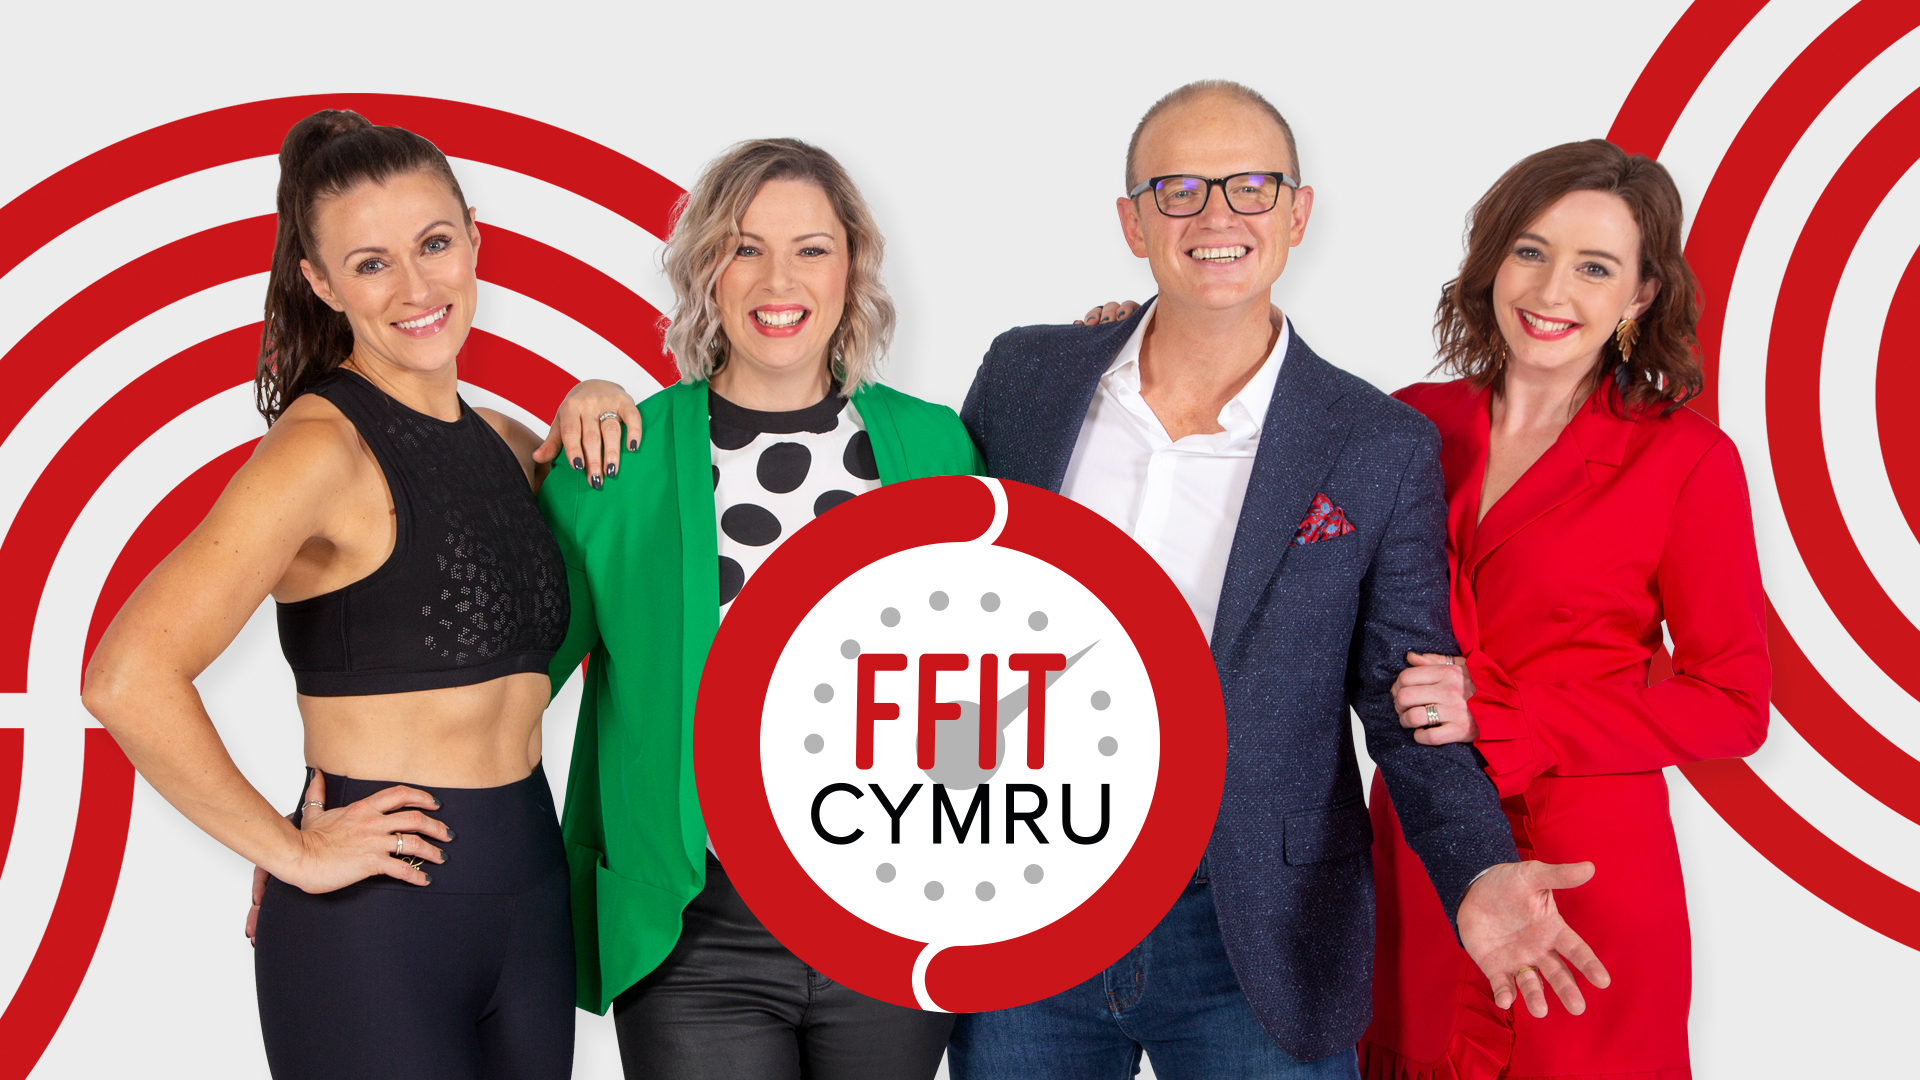 Ffit Cymru